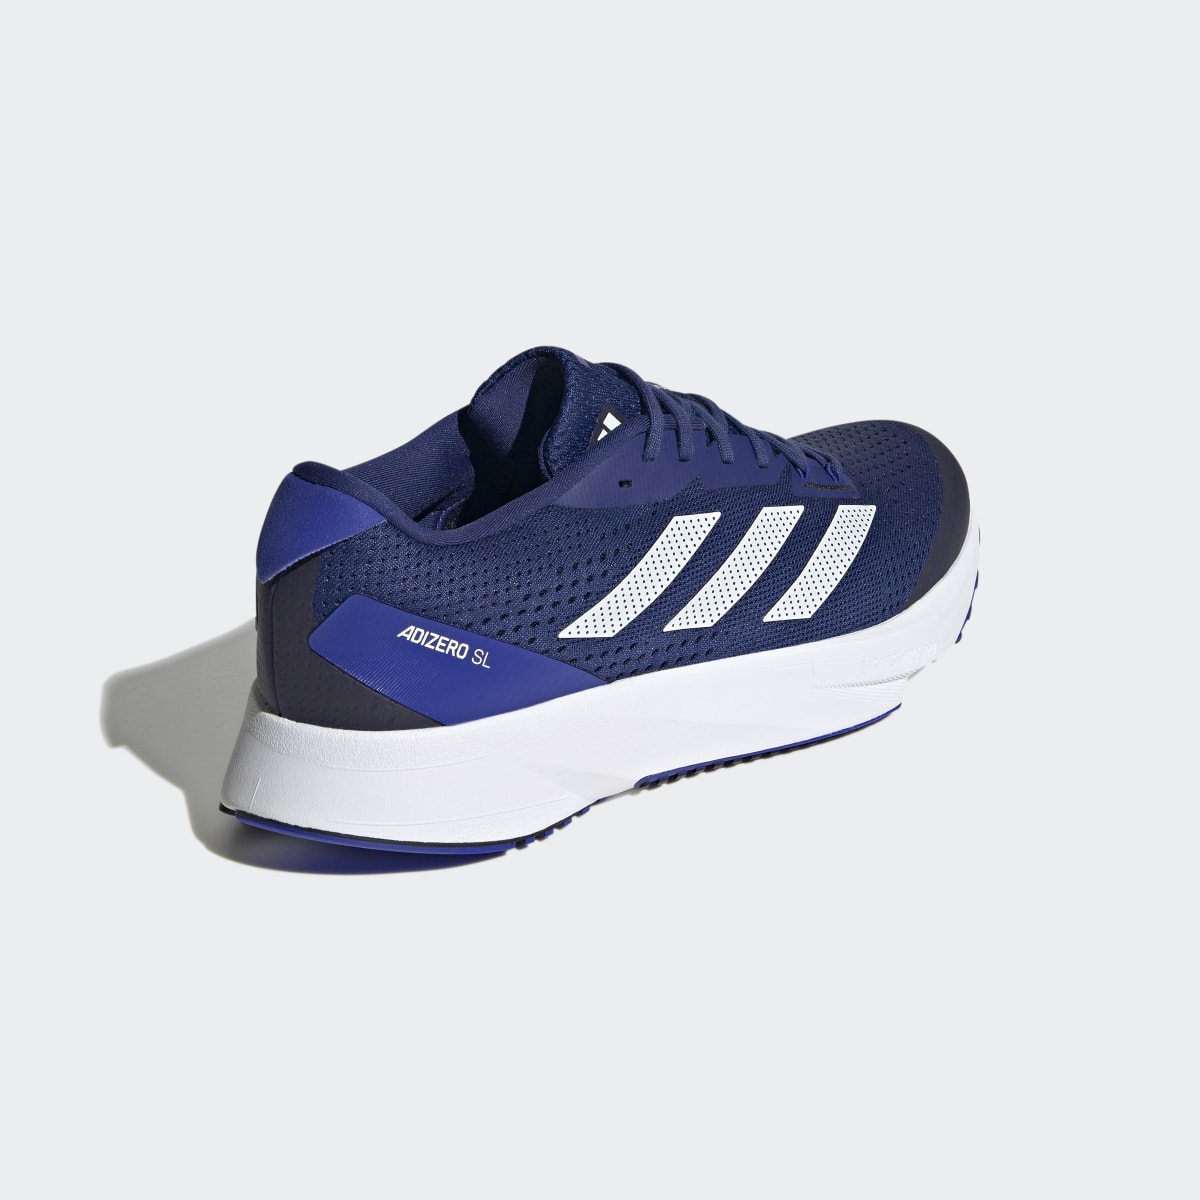 Adidas Adizero SL Running Shoes. 6